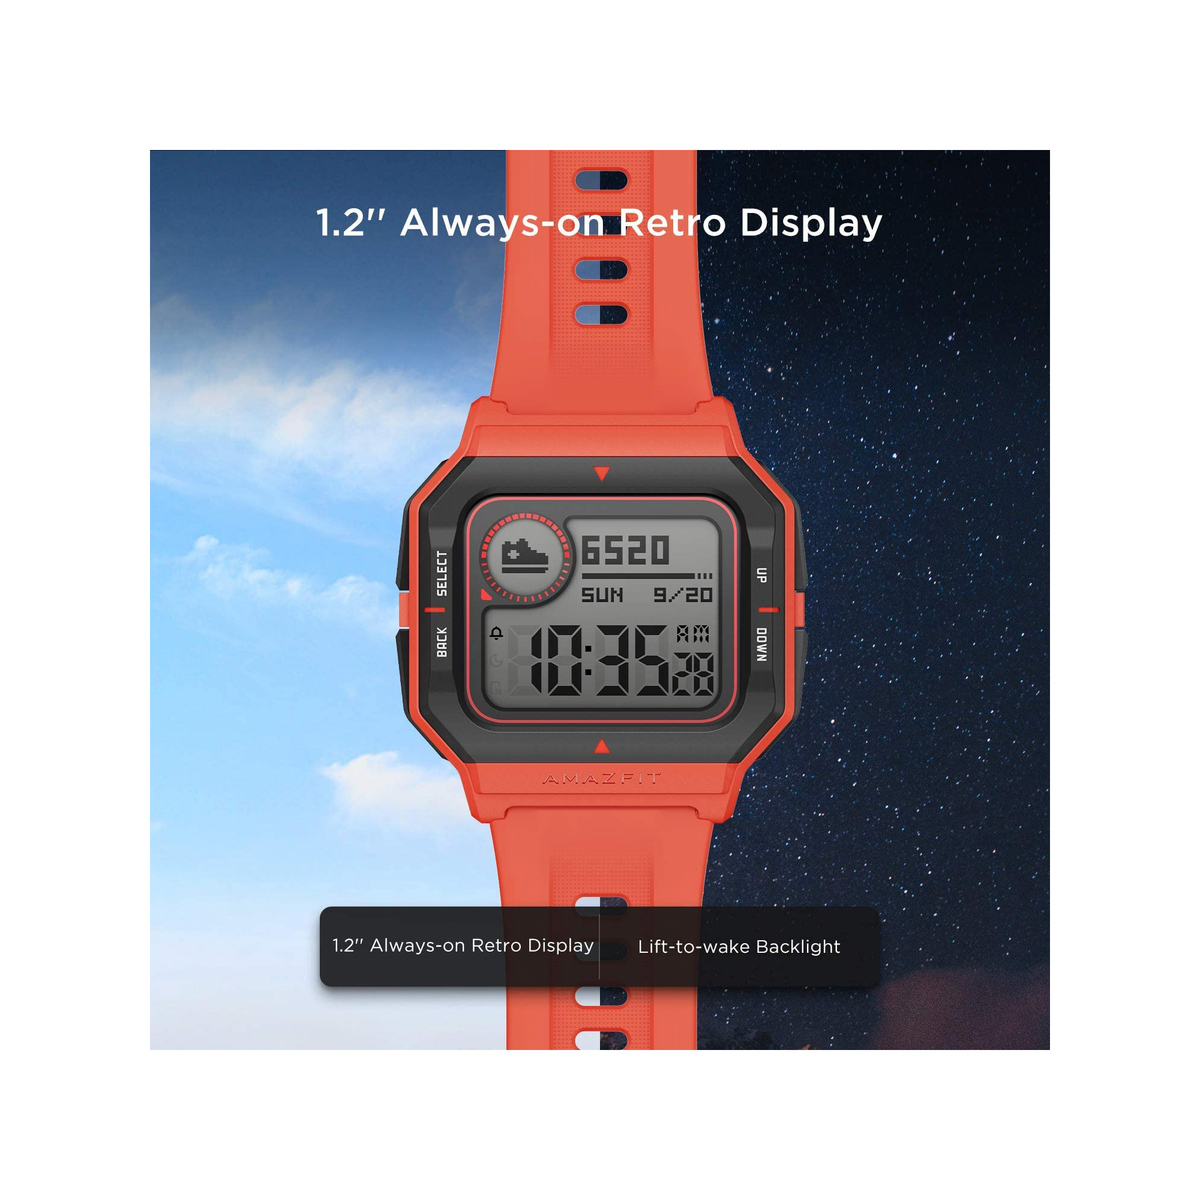 ساعة امازفيت نيو (A2001) الرياضية الذكية مزودة بمراقبة نبضات القلب والنوم - تصميم ريترو - اللون أحمر